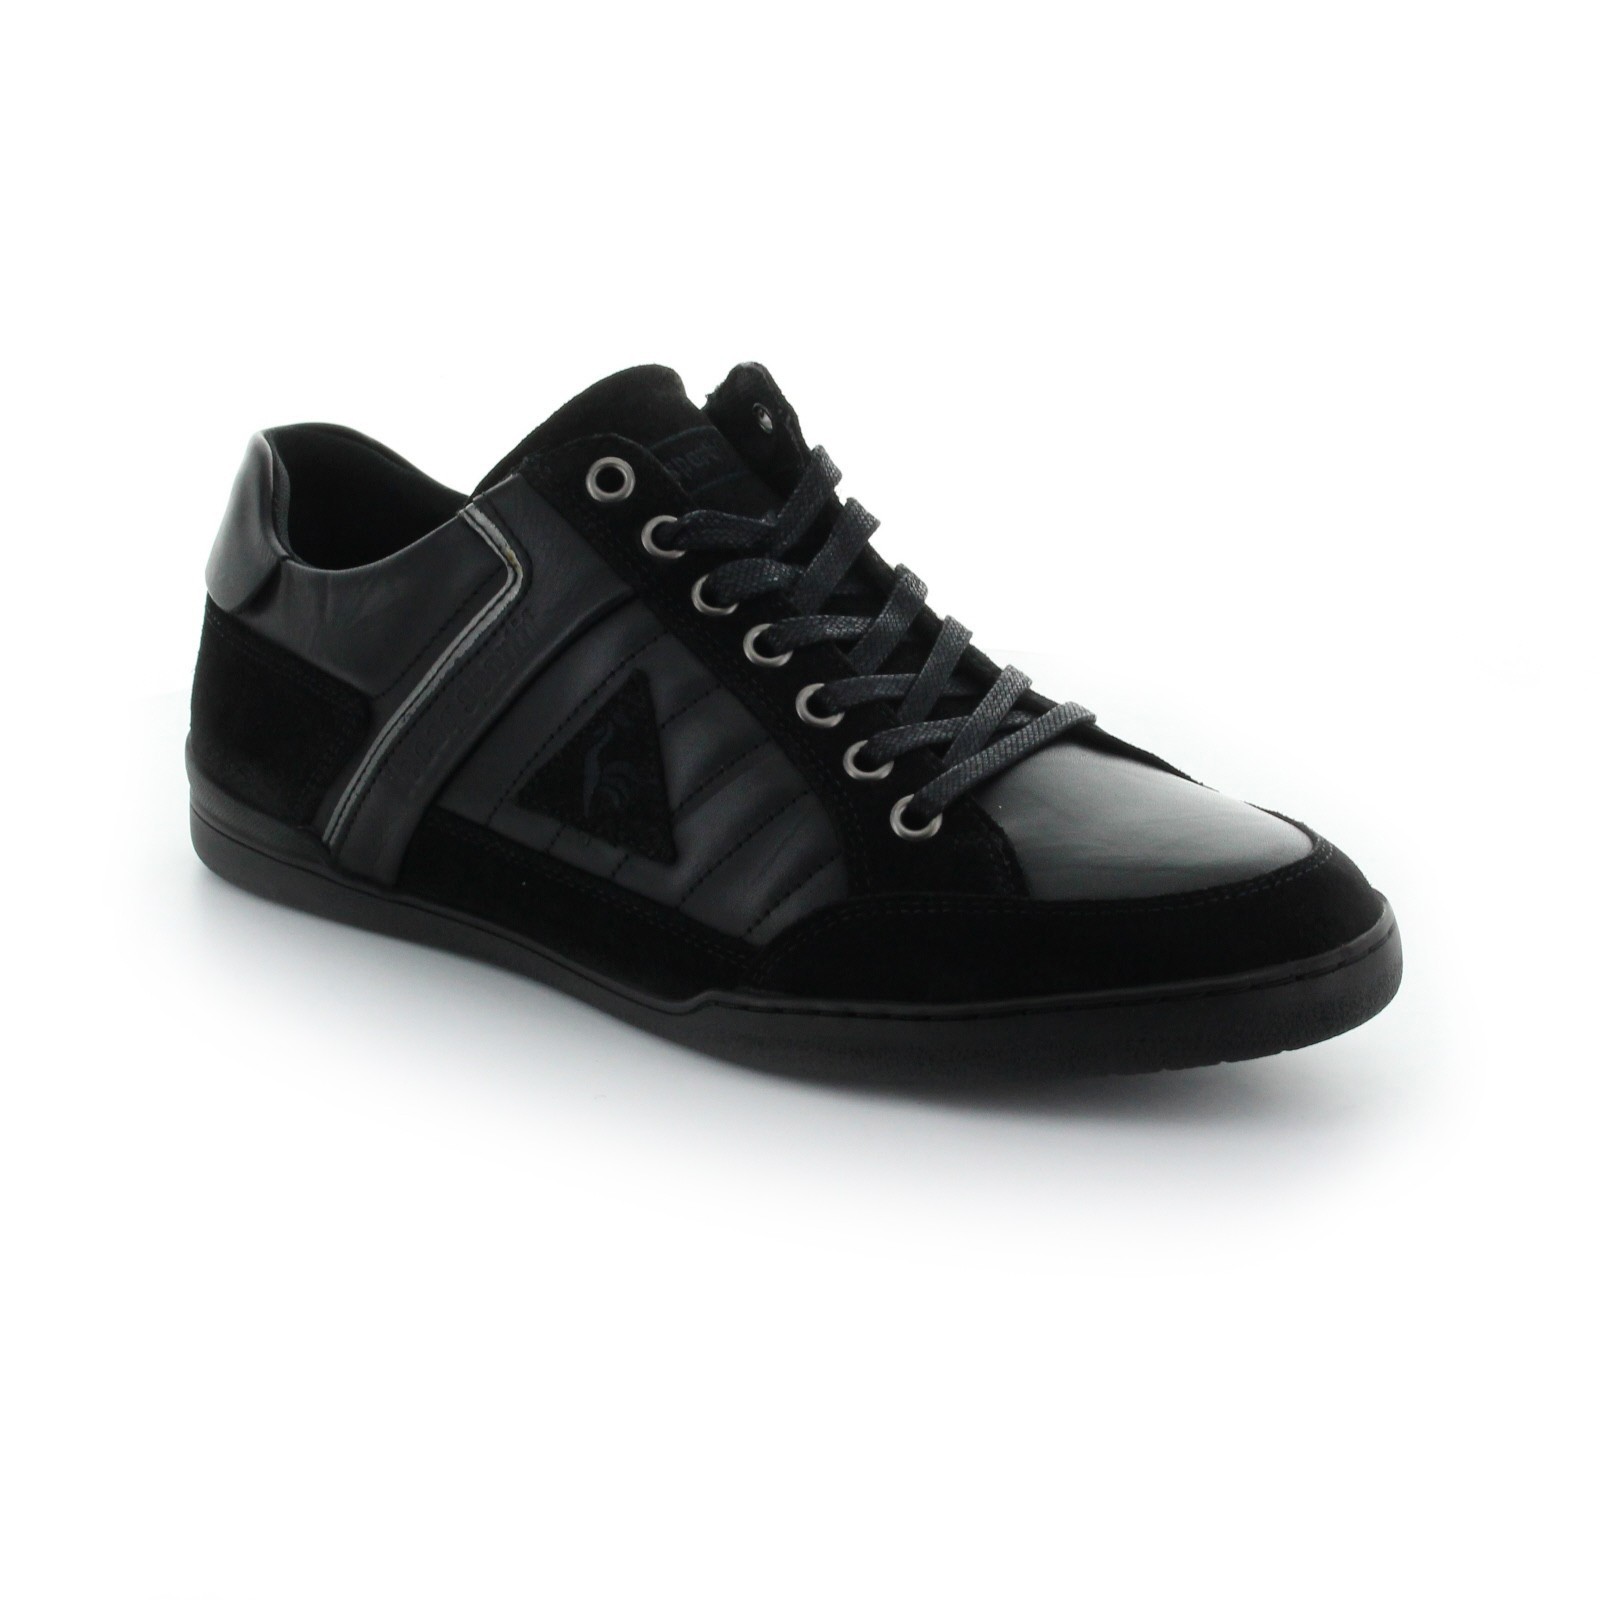 Vleien Oprechtheid Pellen footwear sneakers le coq sportif alsace low lea black - Спортни обувки -  Обувки - Мъже | Tempo Stores